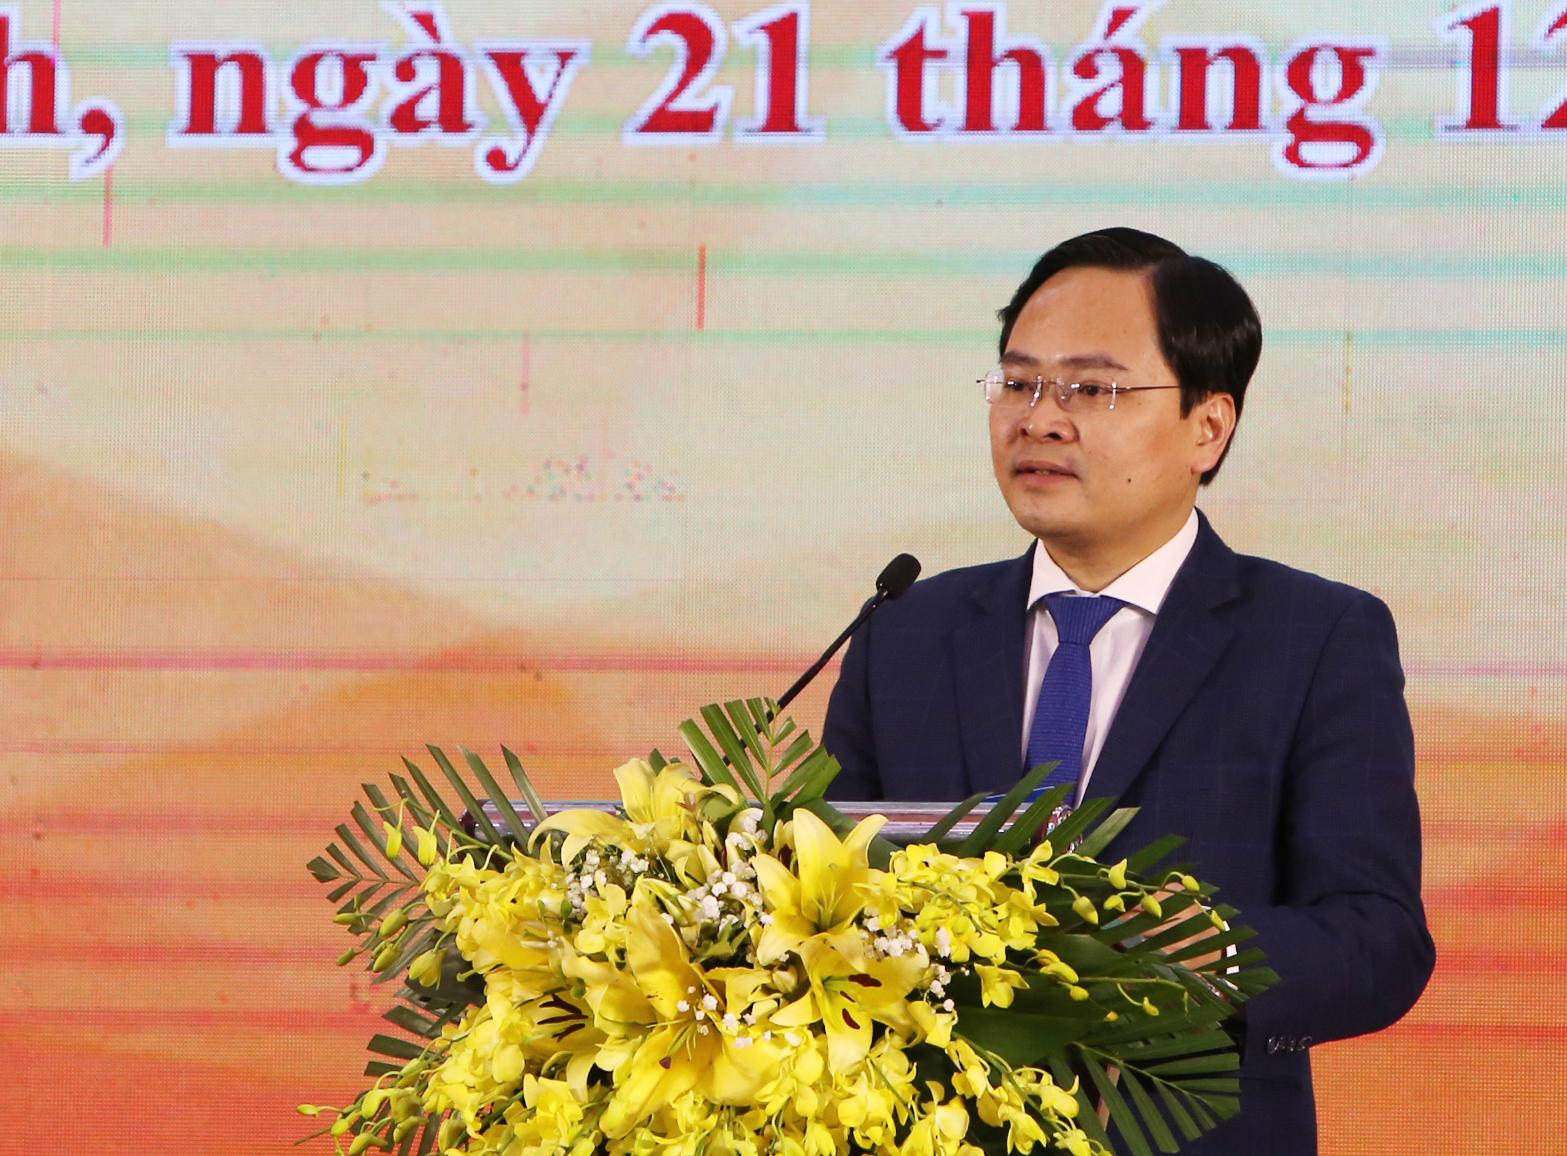 Đồng chí Nguyễn Anh Tuấn - Bí thư Thứ nhất Trung ương Đoàn, phát biểu tổng kết cuộc thi